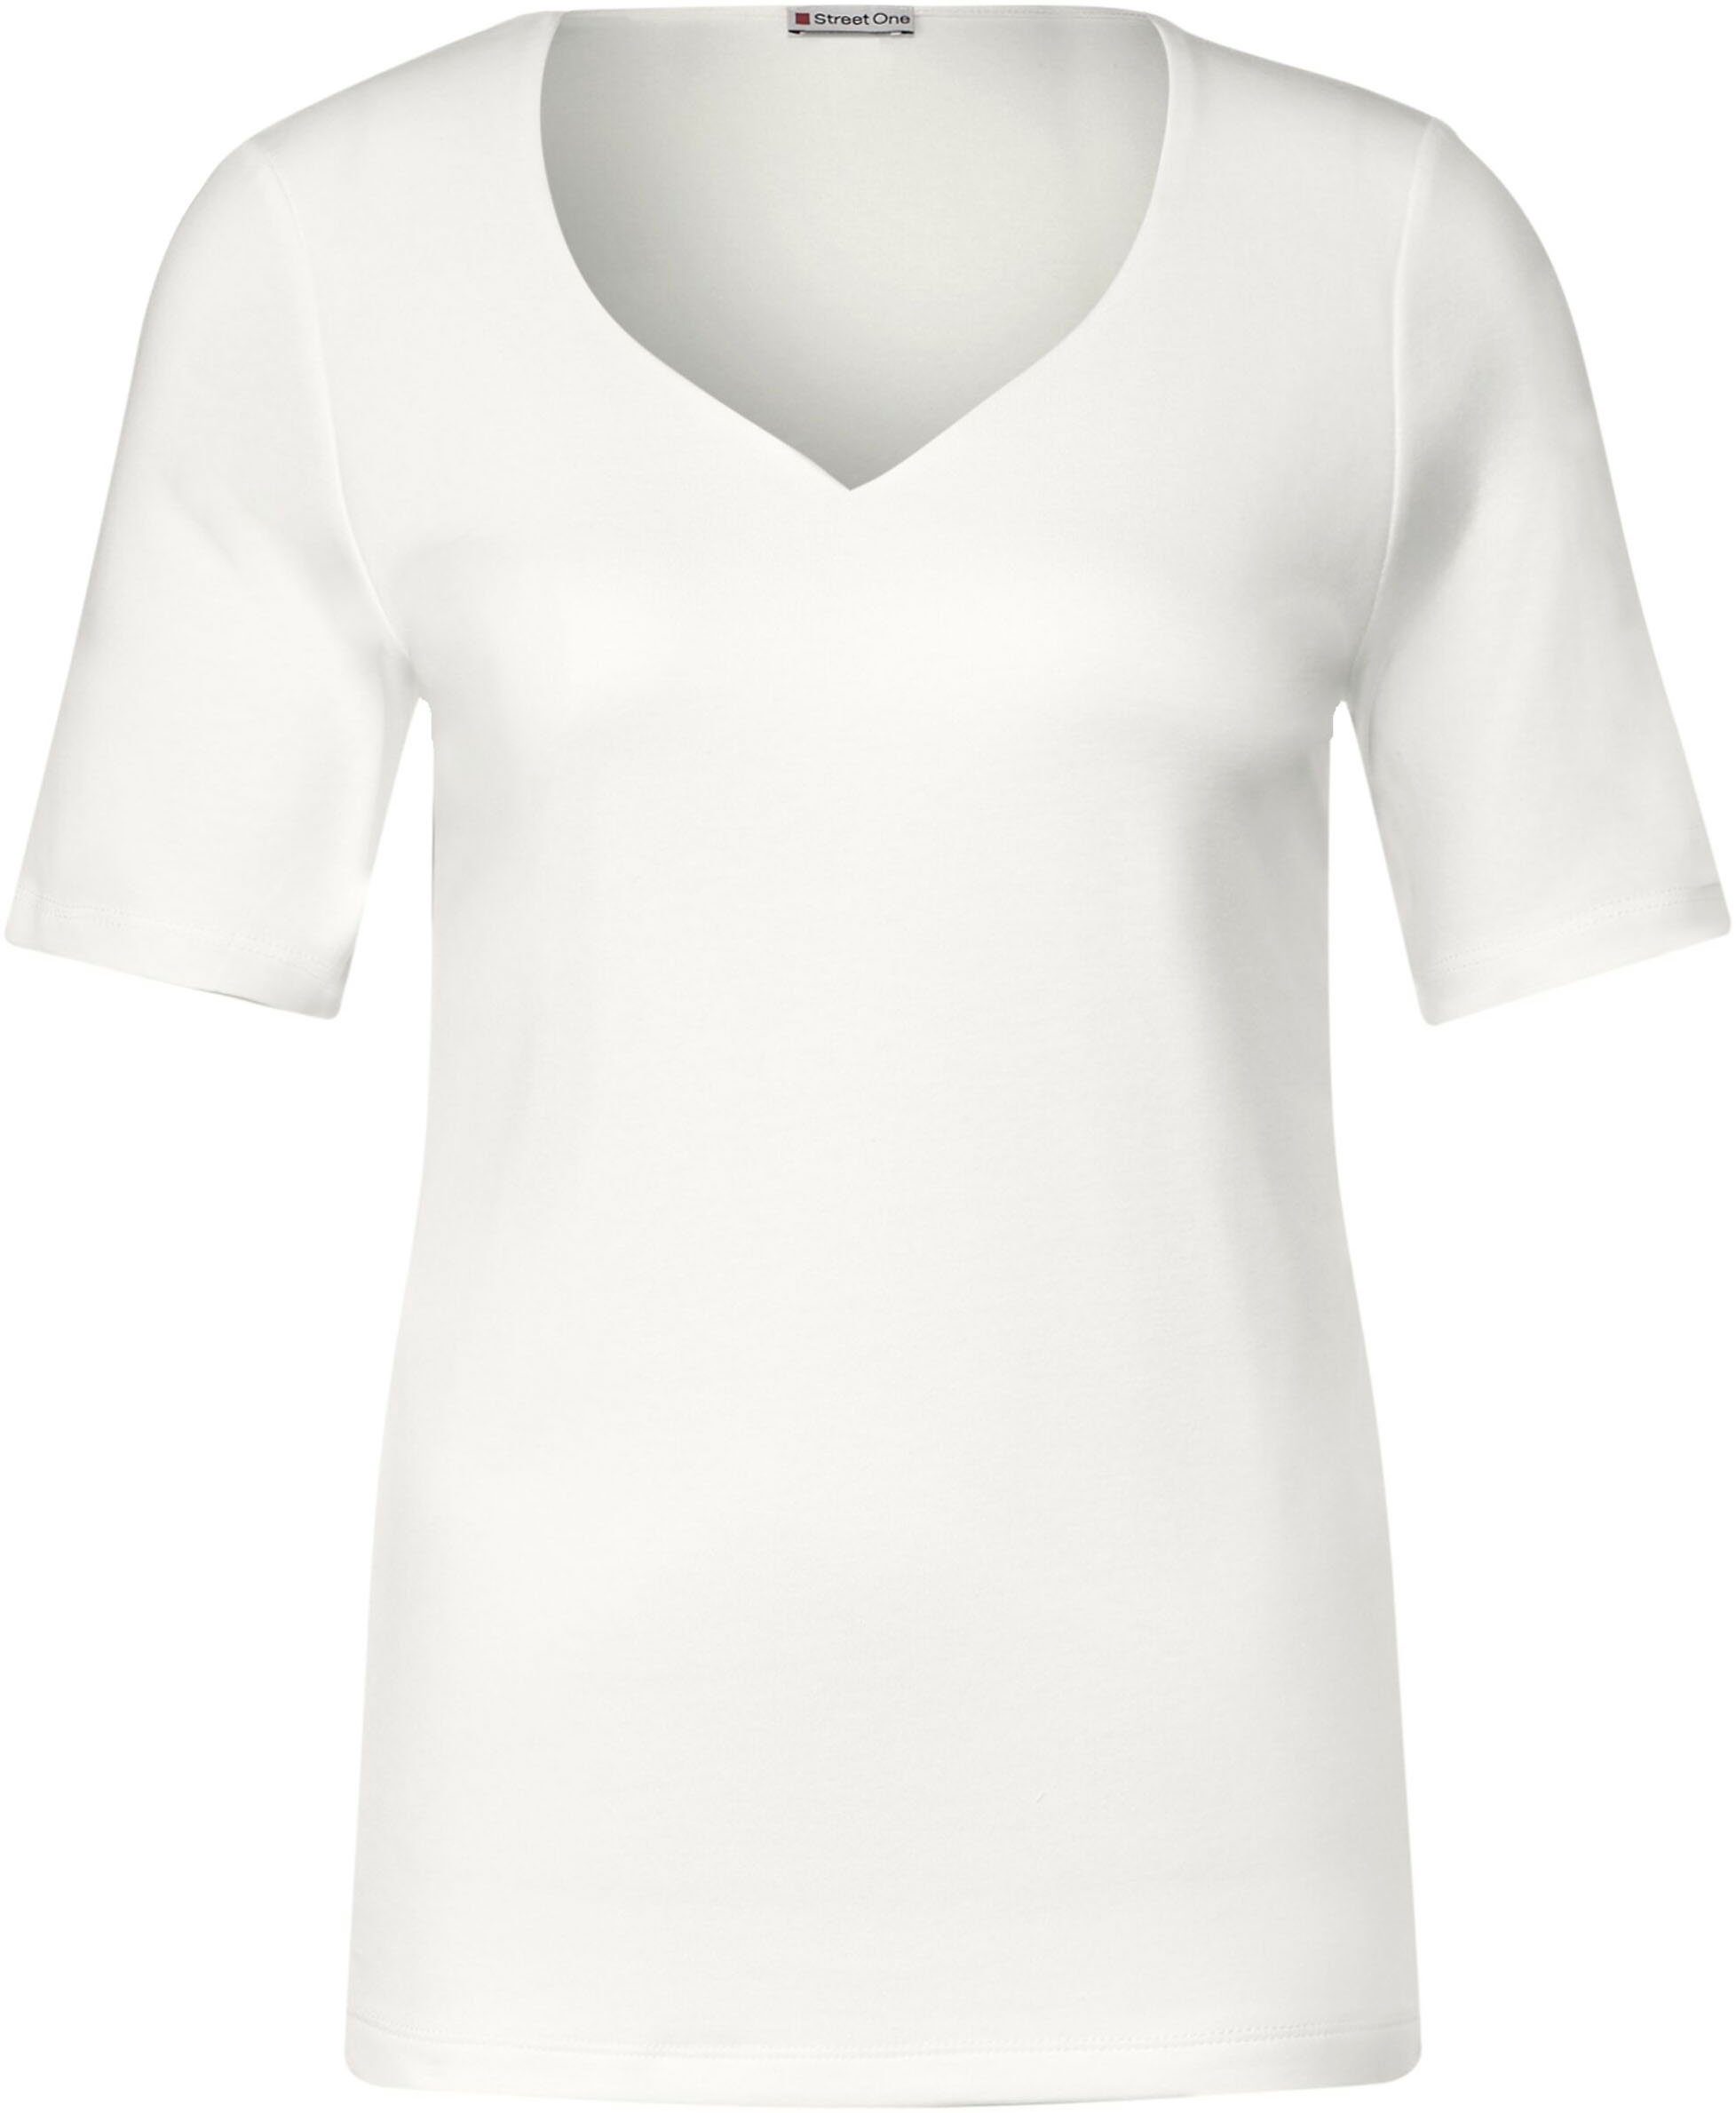 STREET ONE off mit T-Shirt Herz-Ausschnitt white